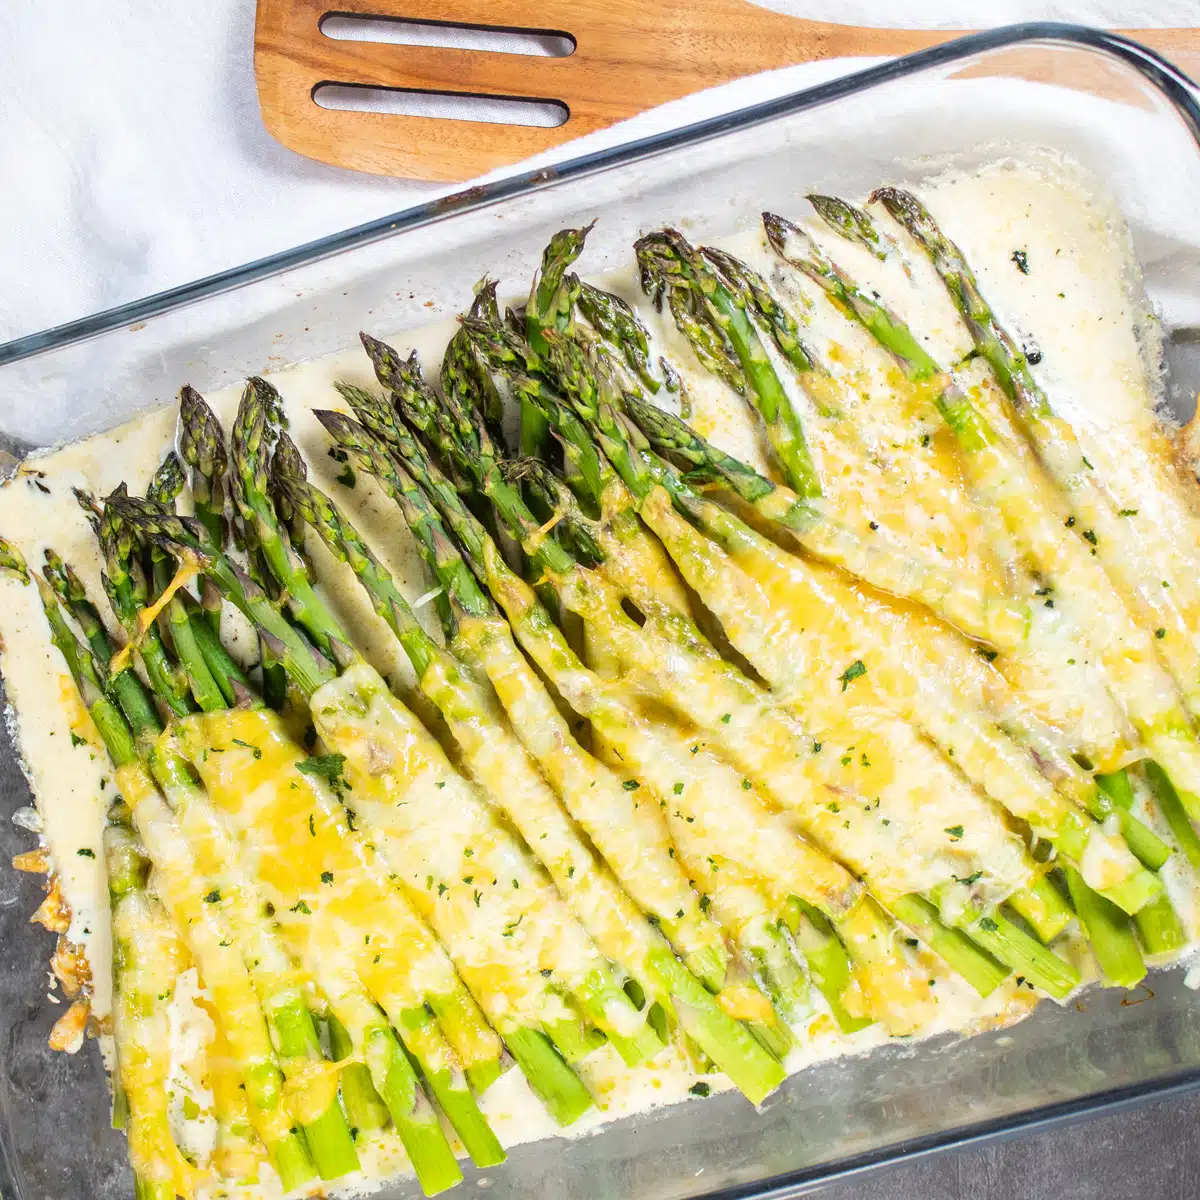 Imej segi empat sama asparagus bakar cheesy.